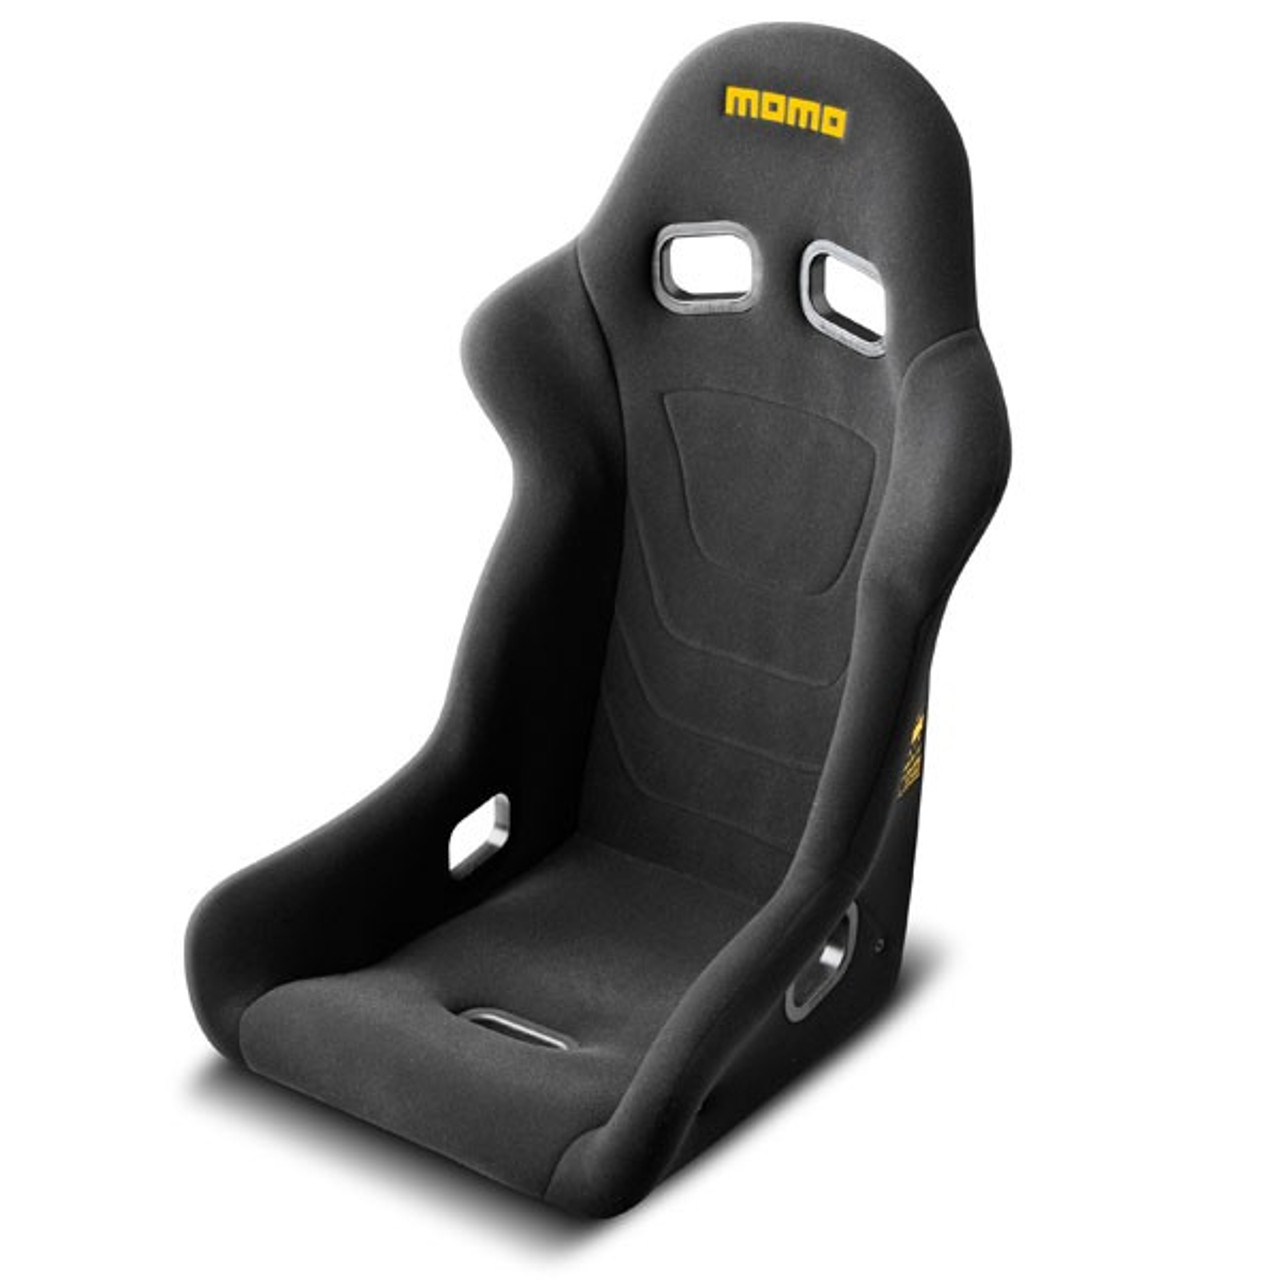 Momo Start Racing Seat Regular Size Black - MOM1070BLK